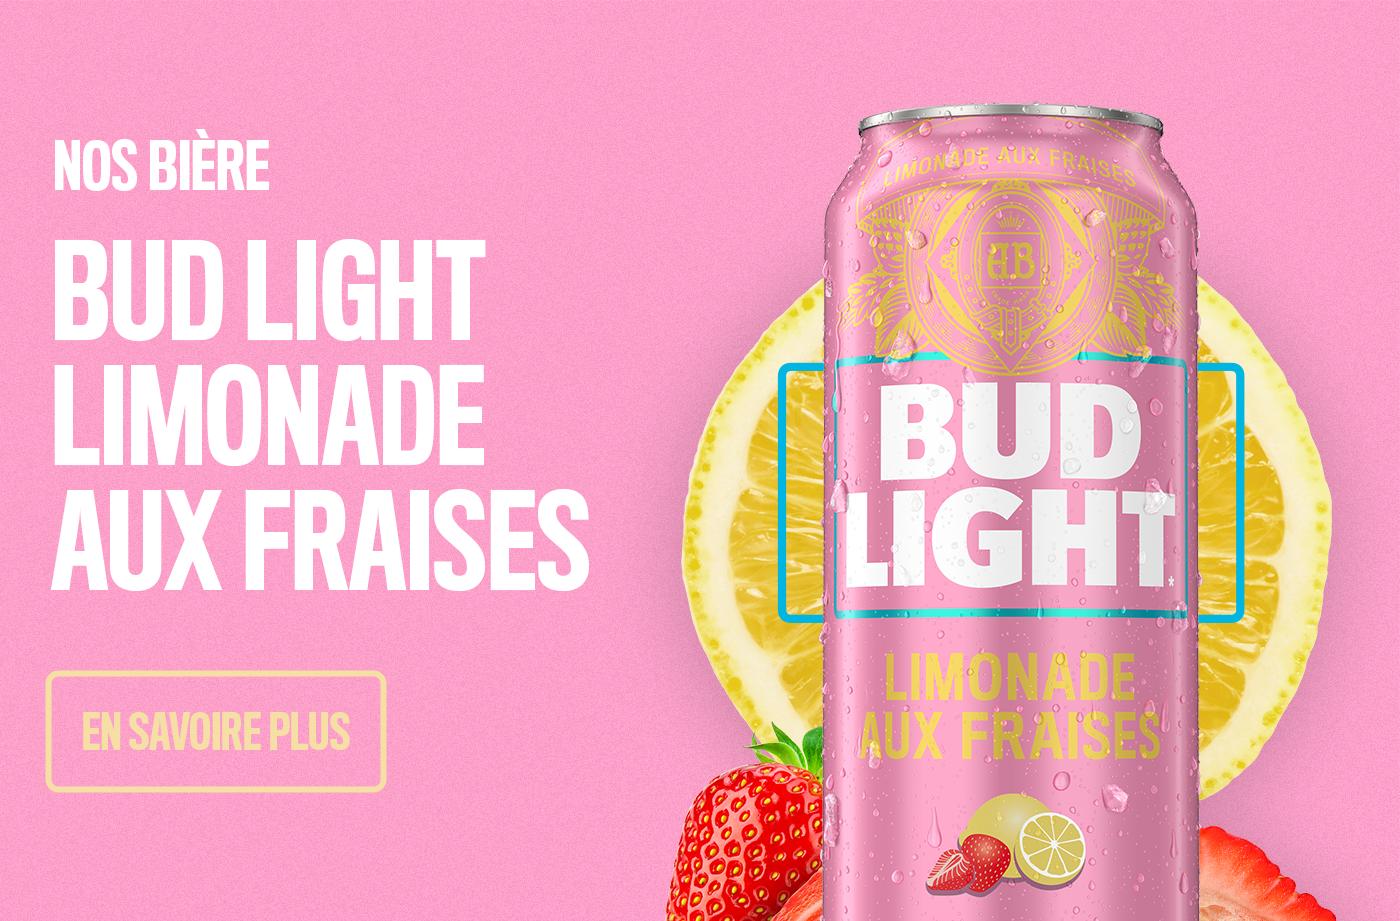 Cliquez pour en savoir plus sur Bud Light Limonade aux Fraises